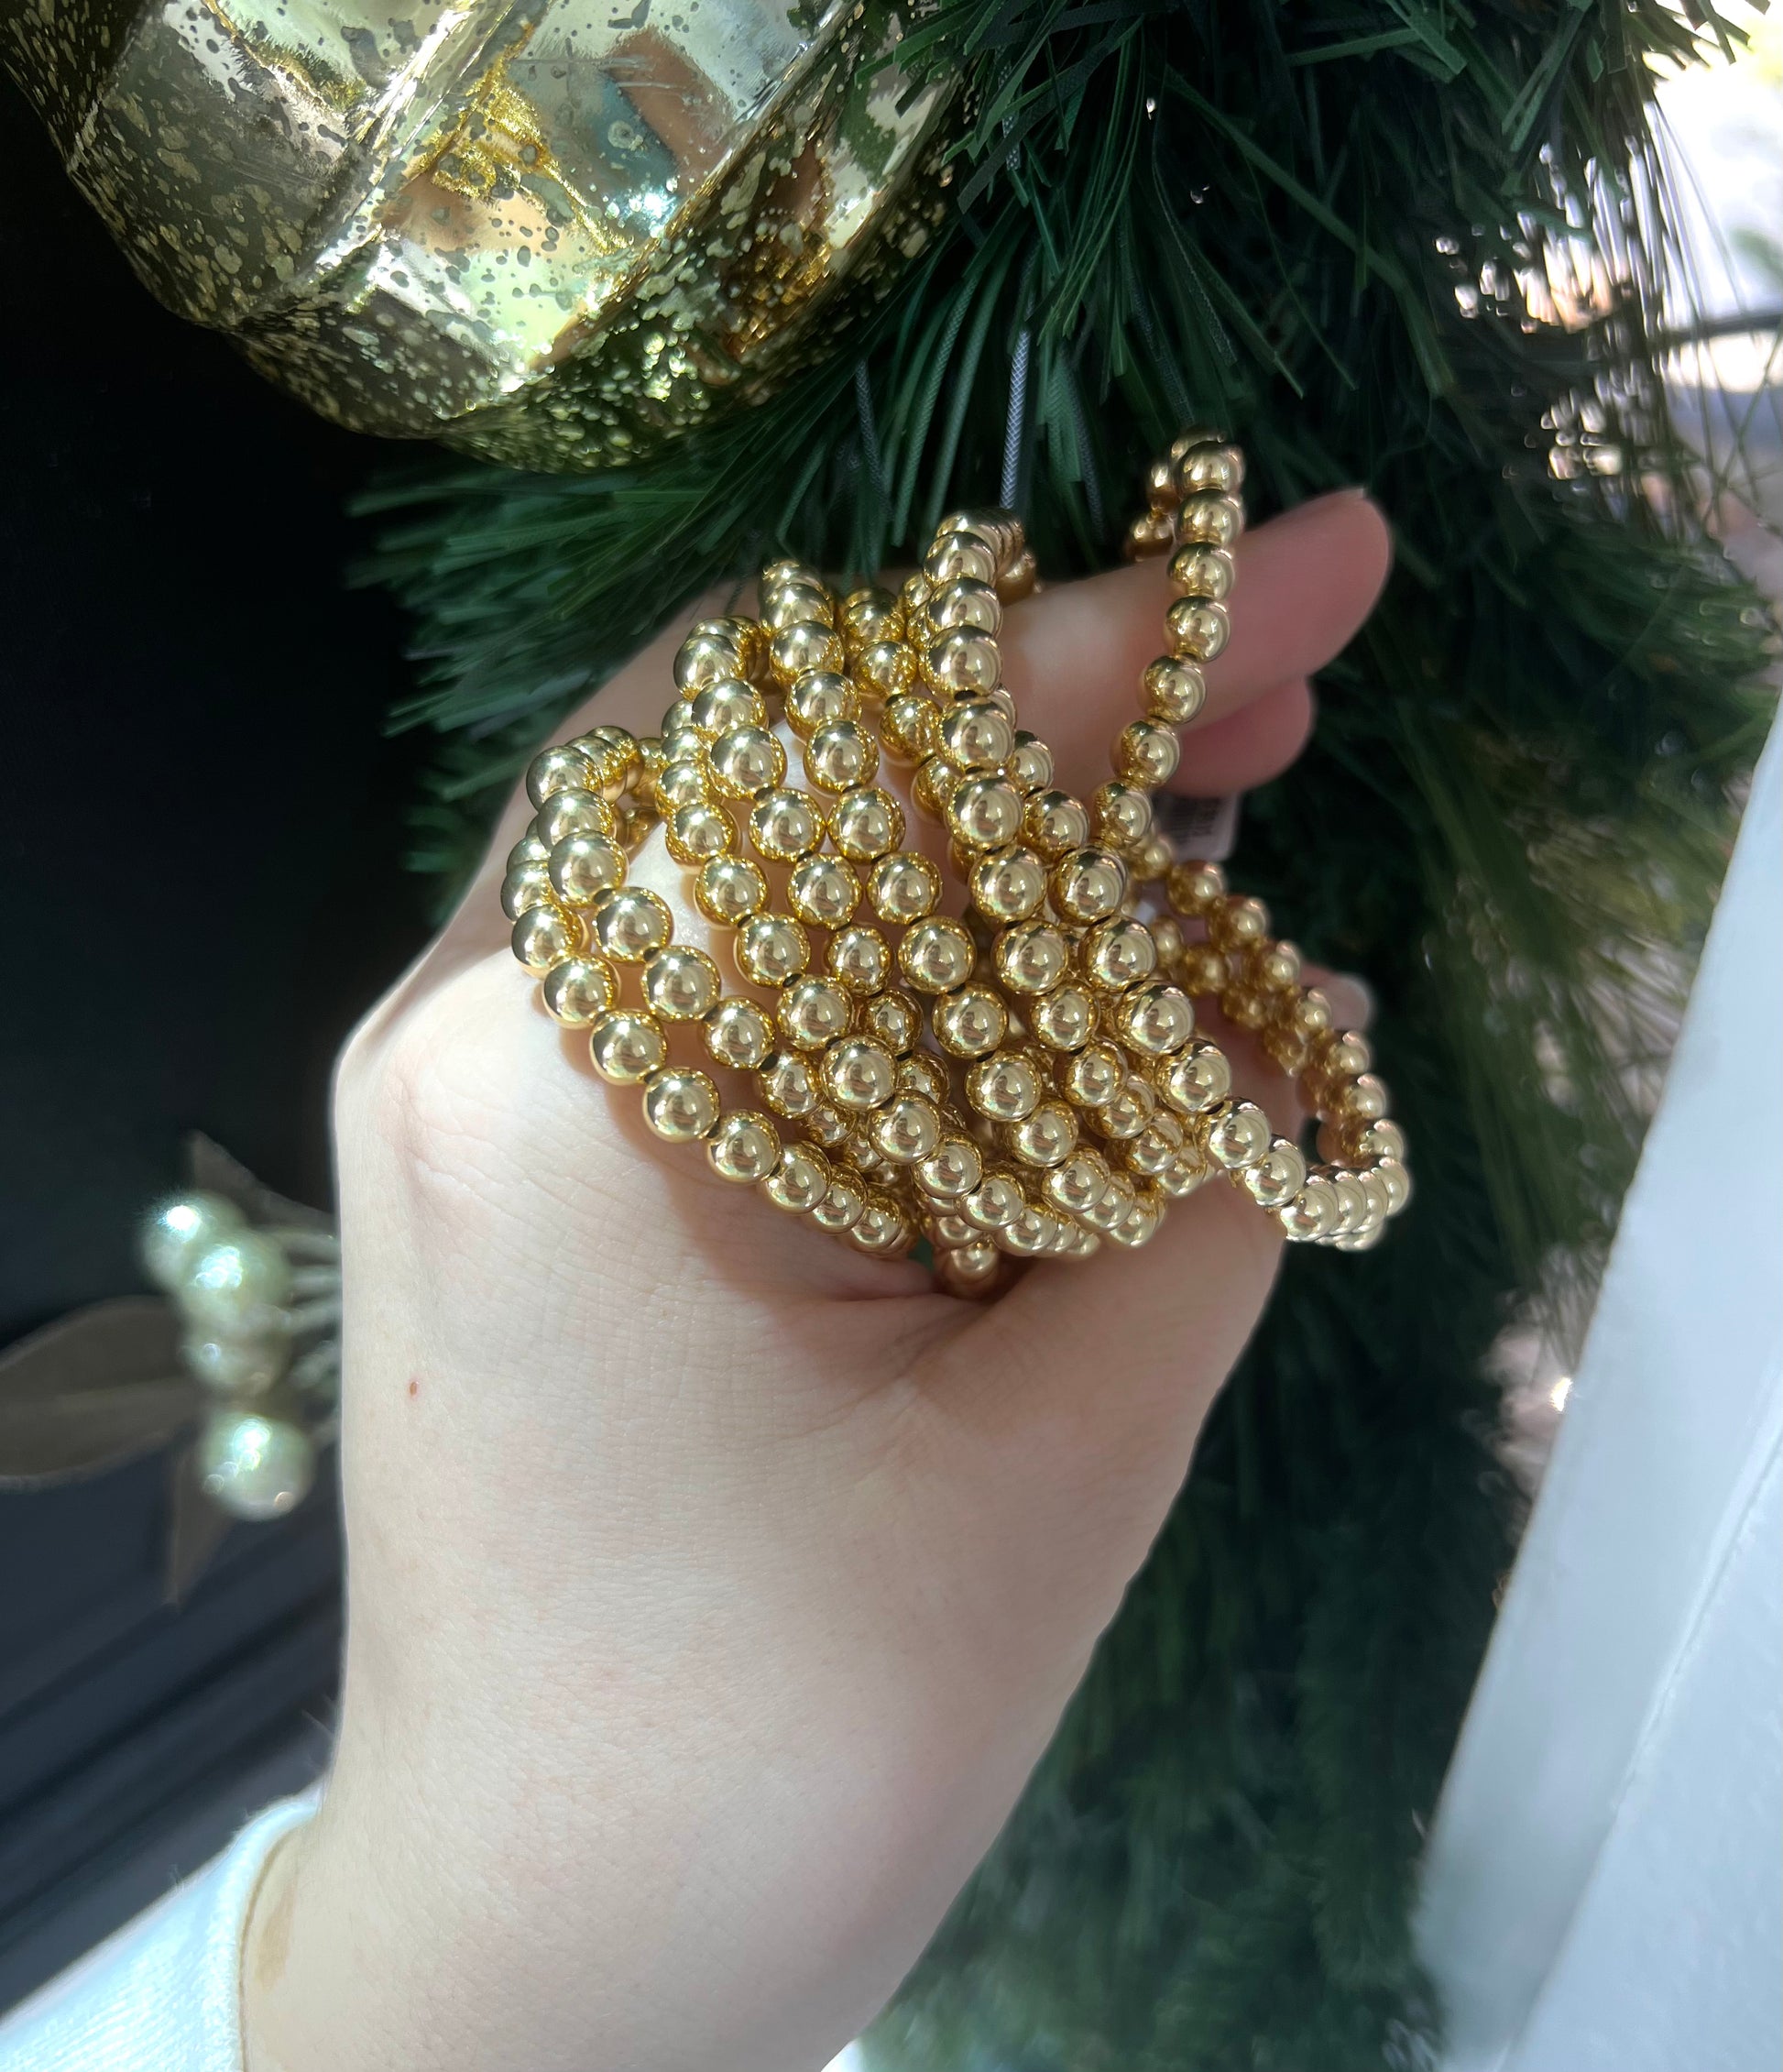 Designer Bracelets for Women - Christmas